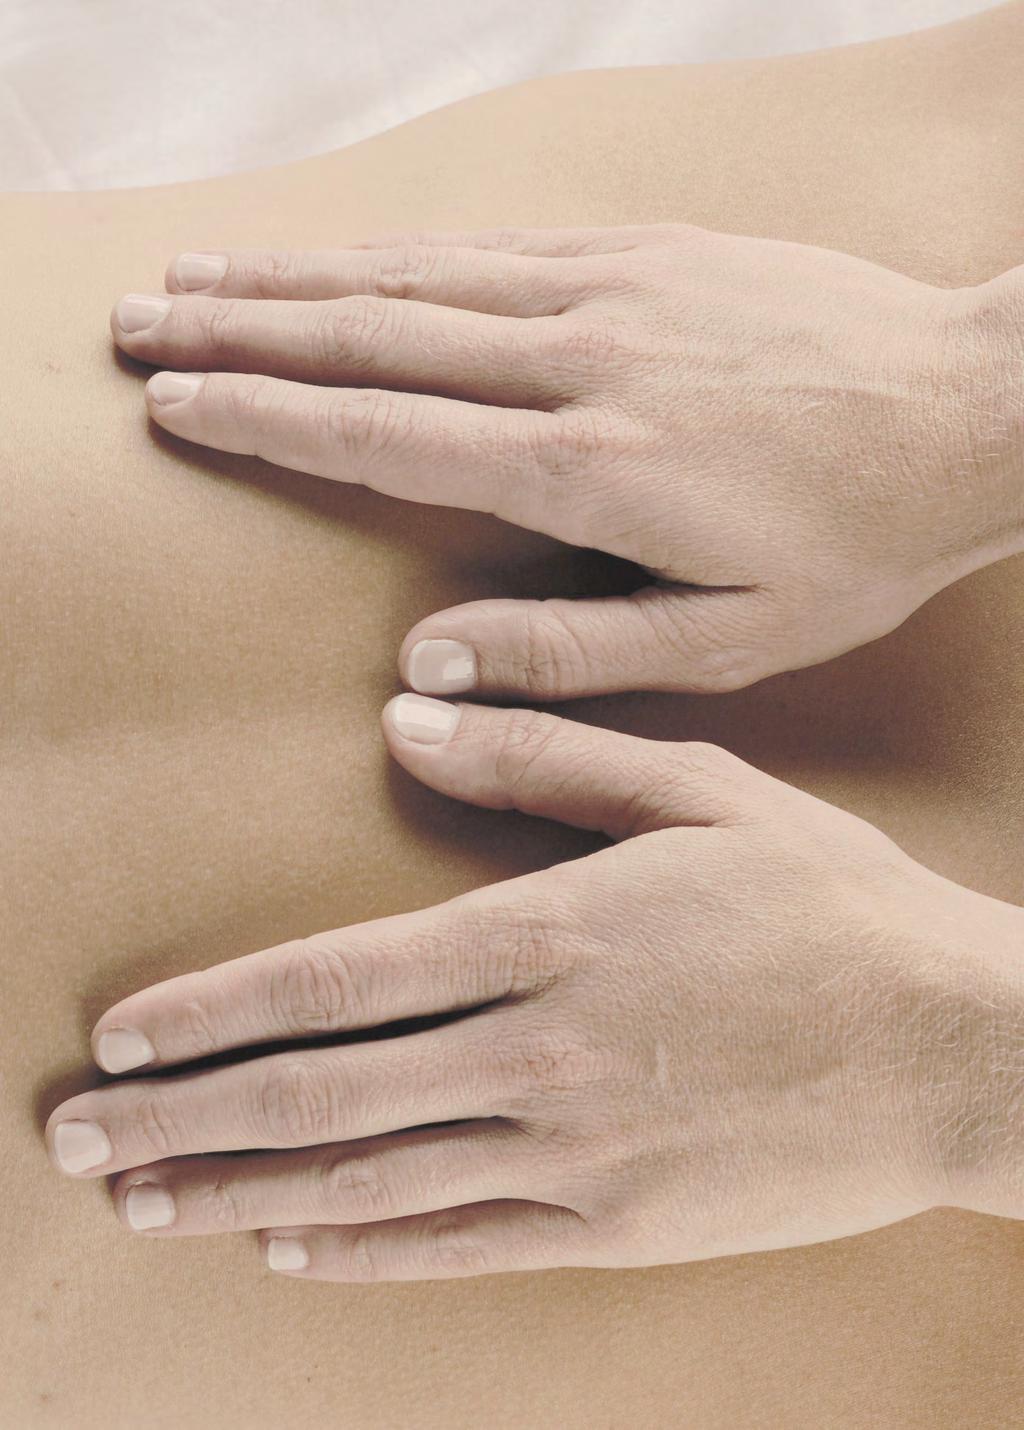 Massaggio Shiatsu: per migliorare la circolazione sanguigna con ritmo regolare e sapiente di ripetute pressioni e rilasci.